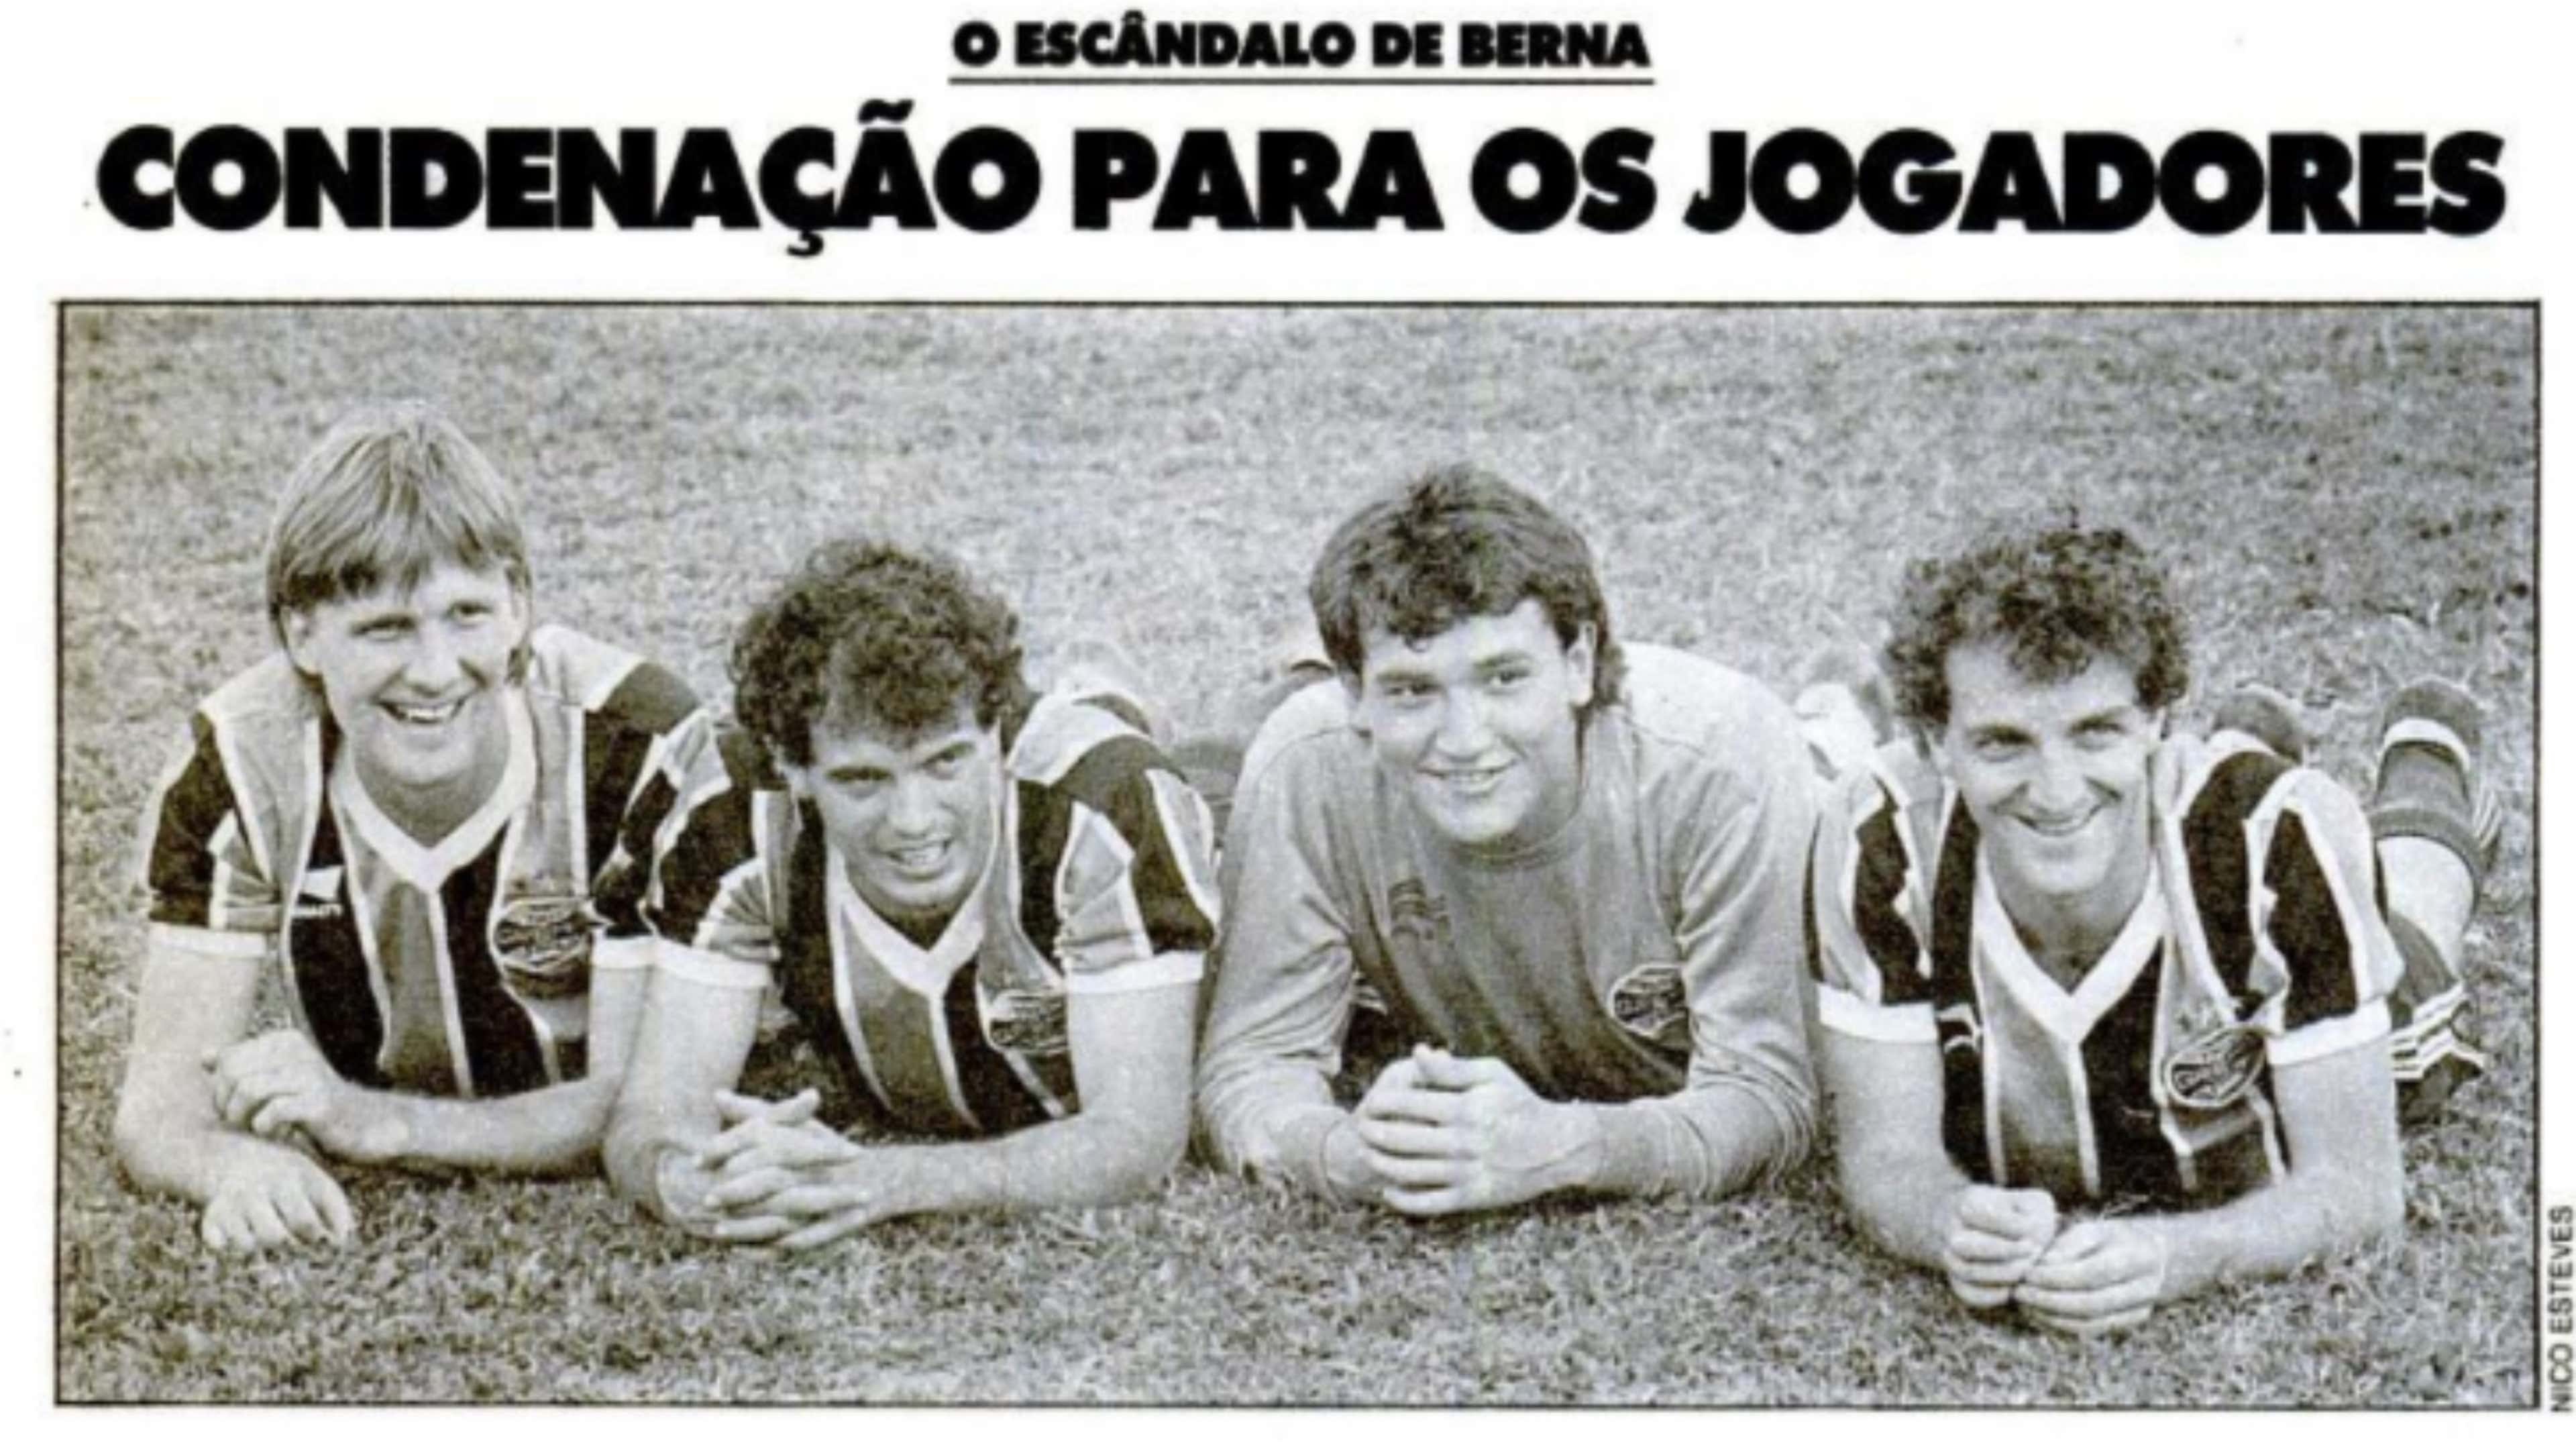 Recorte da Revista Placar, de 1987, sobre o Escândalo de Berna, envolvendo jogadores do Grêmio